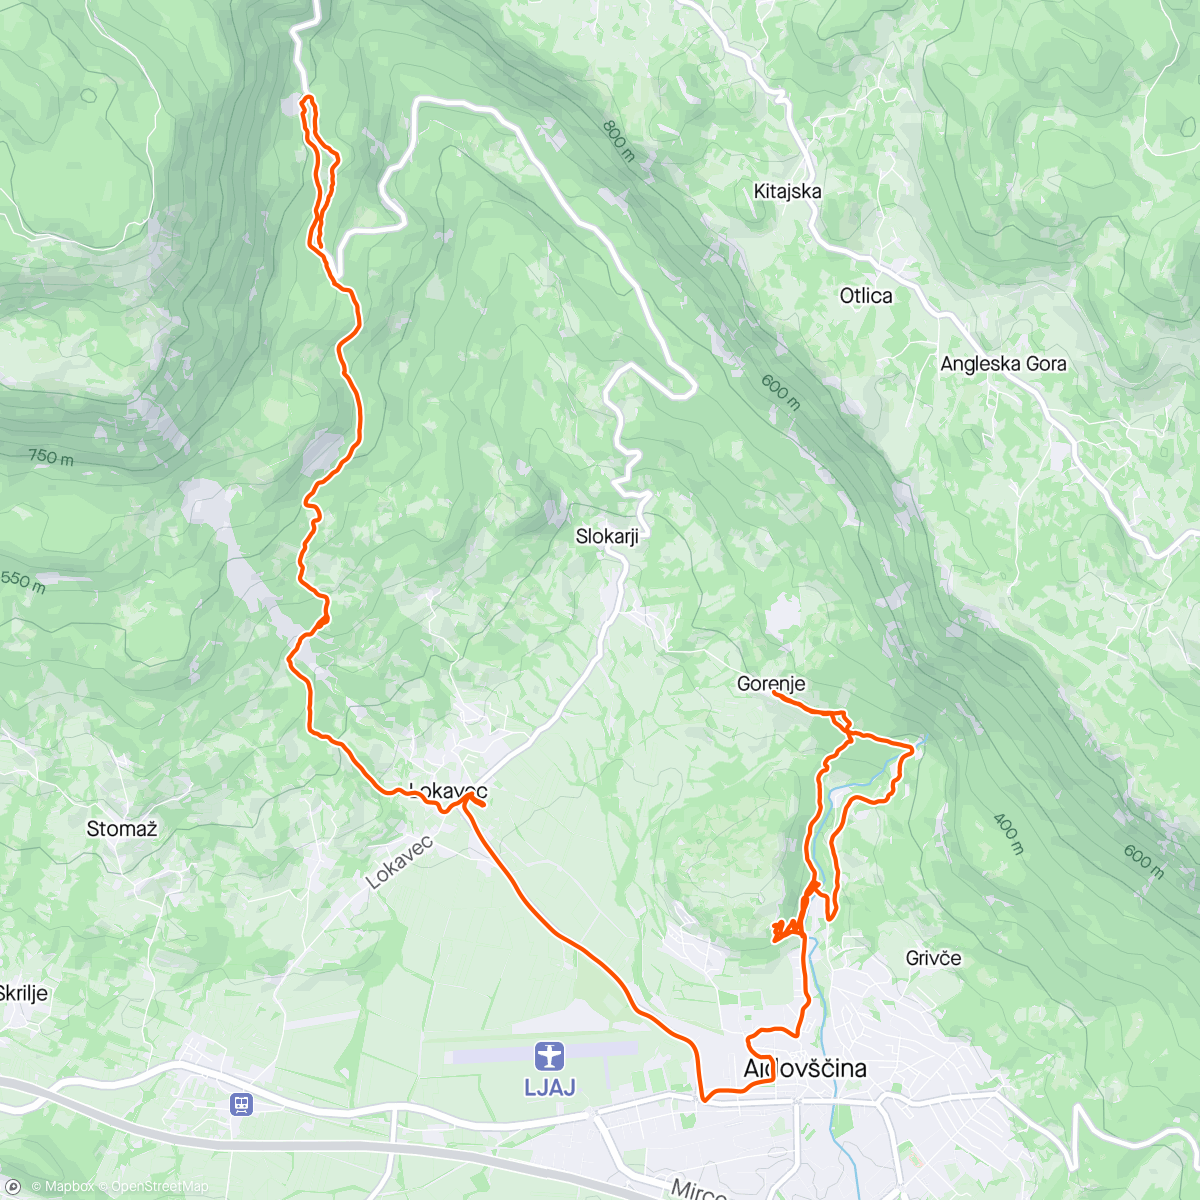 Carte de l'activité Oggi trasferta in Slovenia a vedere dei trail nuovi…
In ottima compagnia di GIANCARL e David (piacevole scoperta)…
#orbea #unno #norco #mtb #enduro #trail #pump #pumptrack